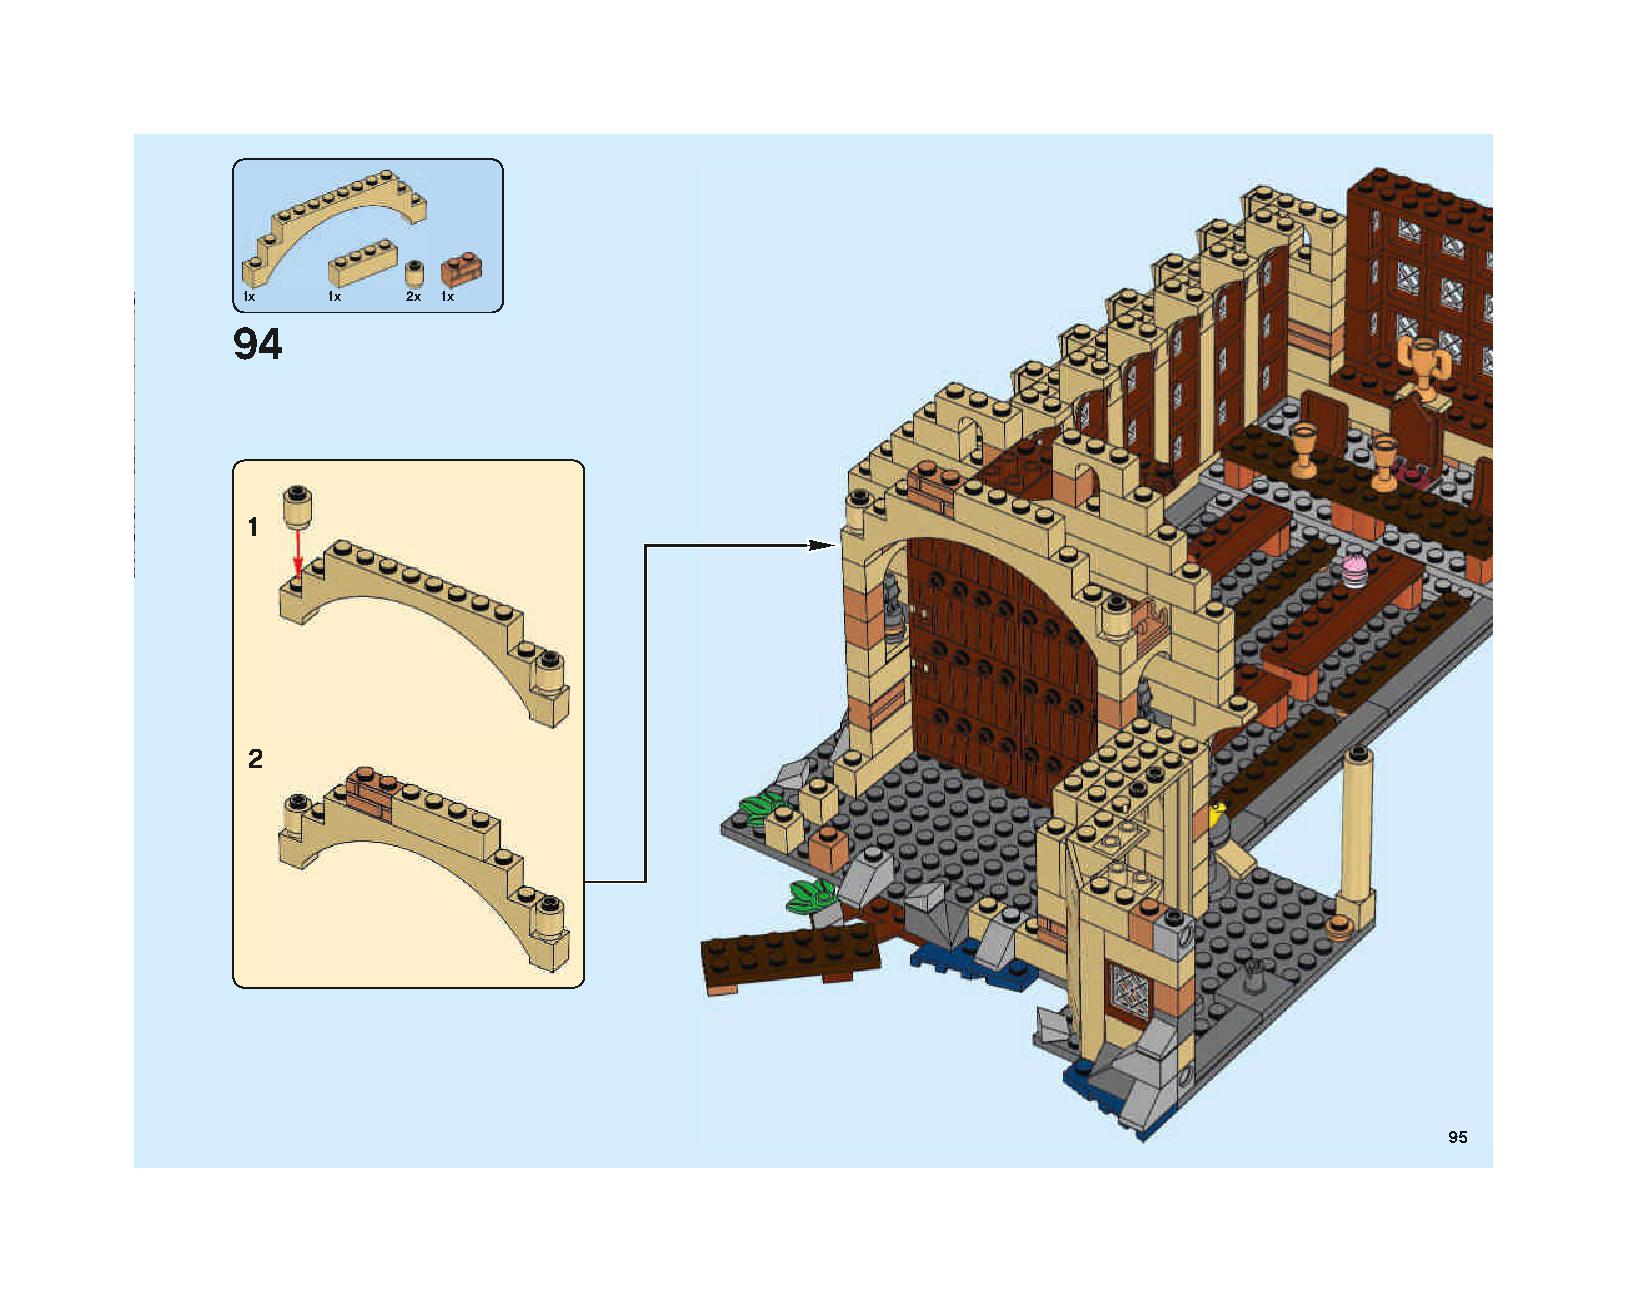 ホグワーツの大広間 75954 レゴの商品情報 レゴの説明書・組立方法 95 page